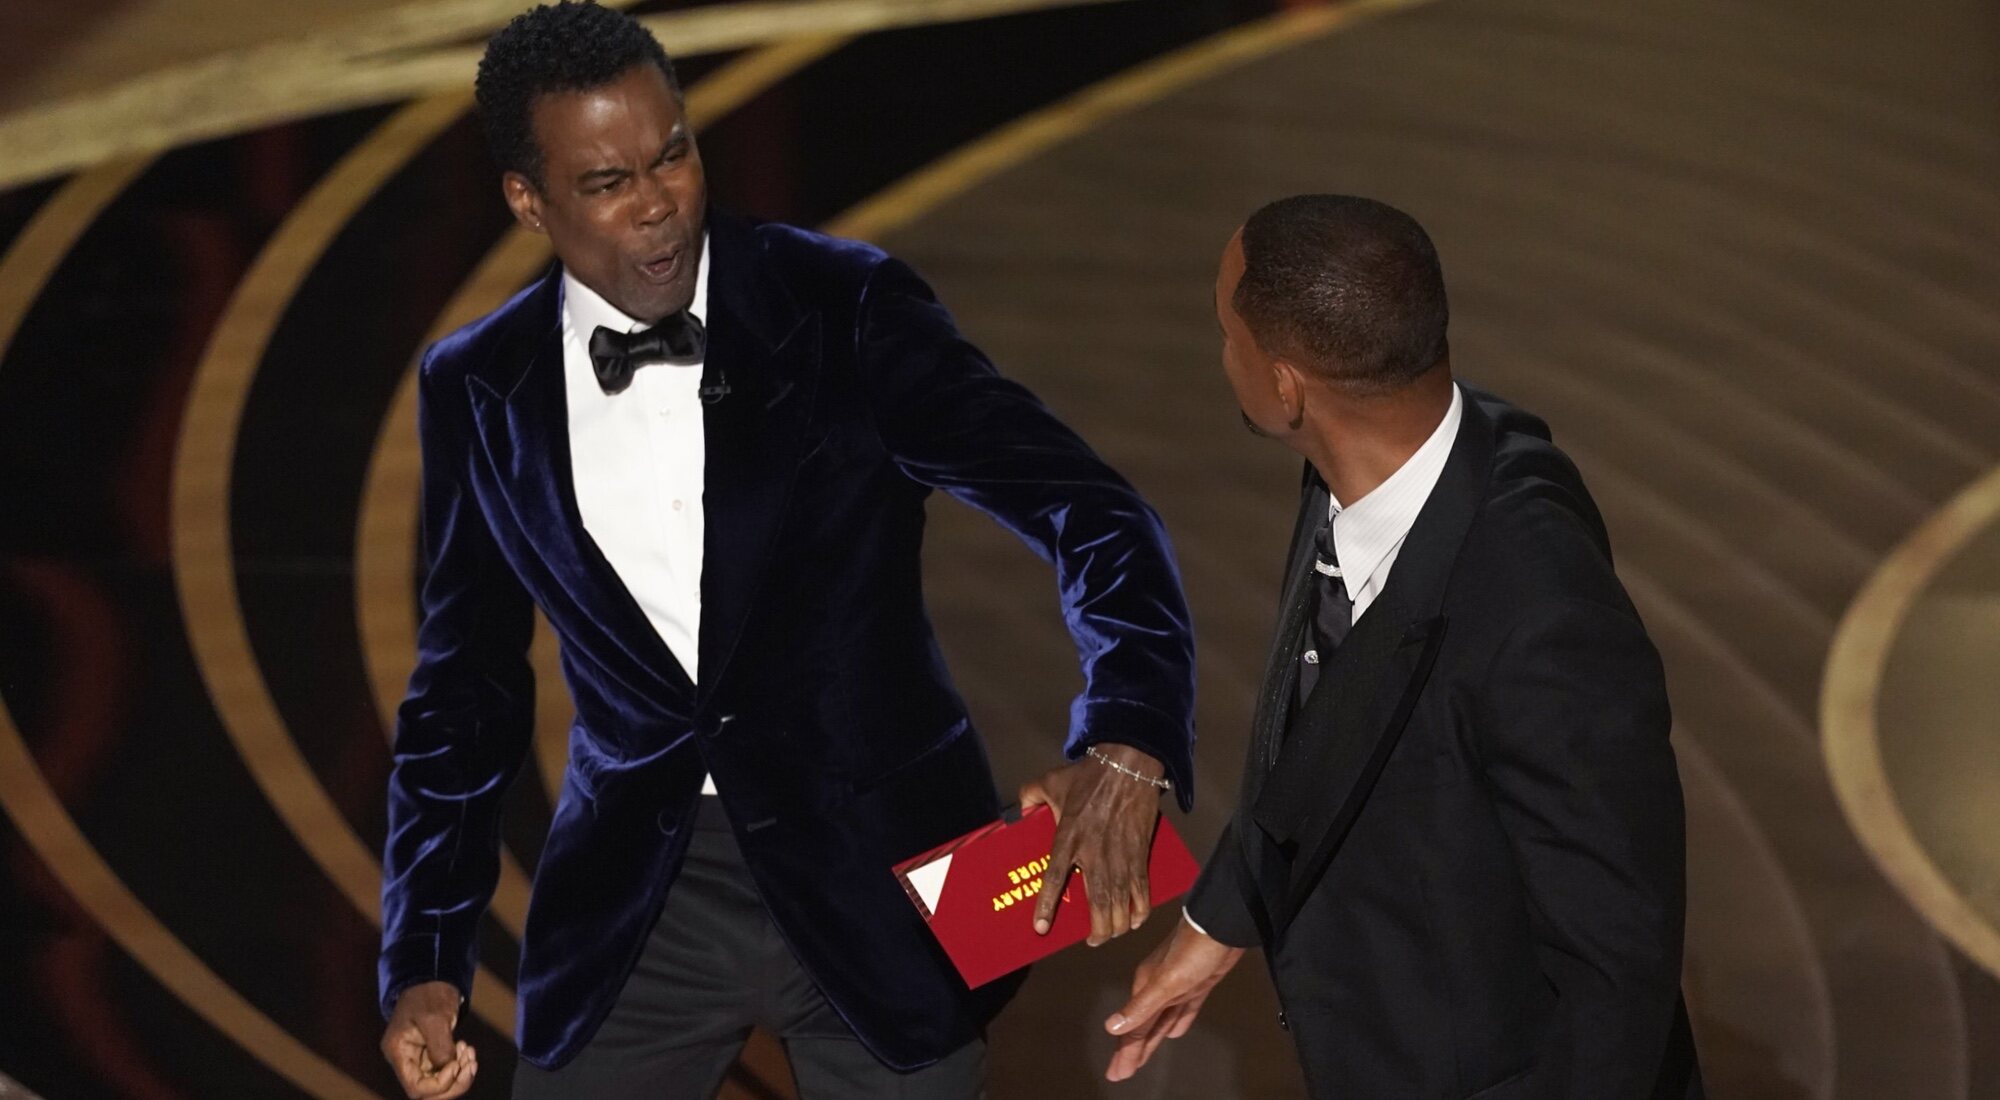  Will Smith propinándole un bofetón a Chris Rock en los Oscars